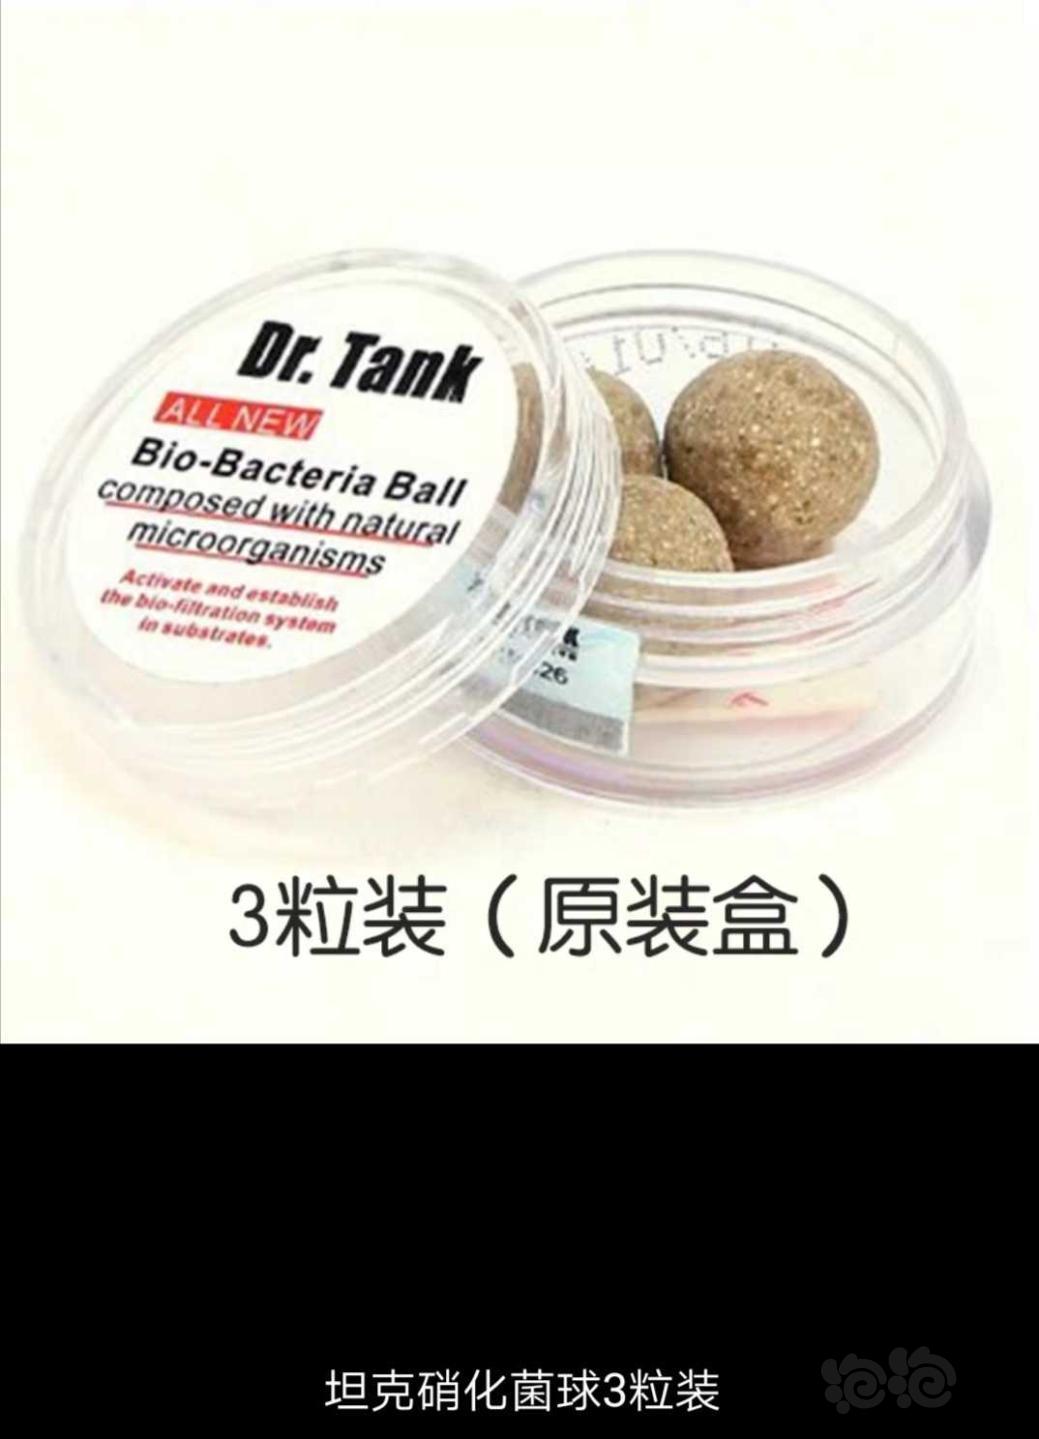 【用品】2019-10-31#RMB拍卖坦克二代硝化细菌球三粒装*3盒-图1